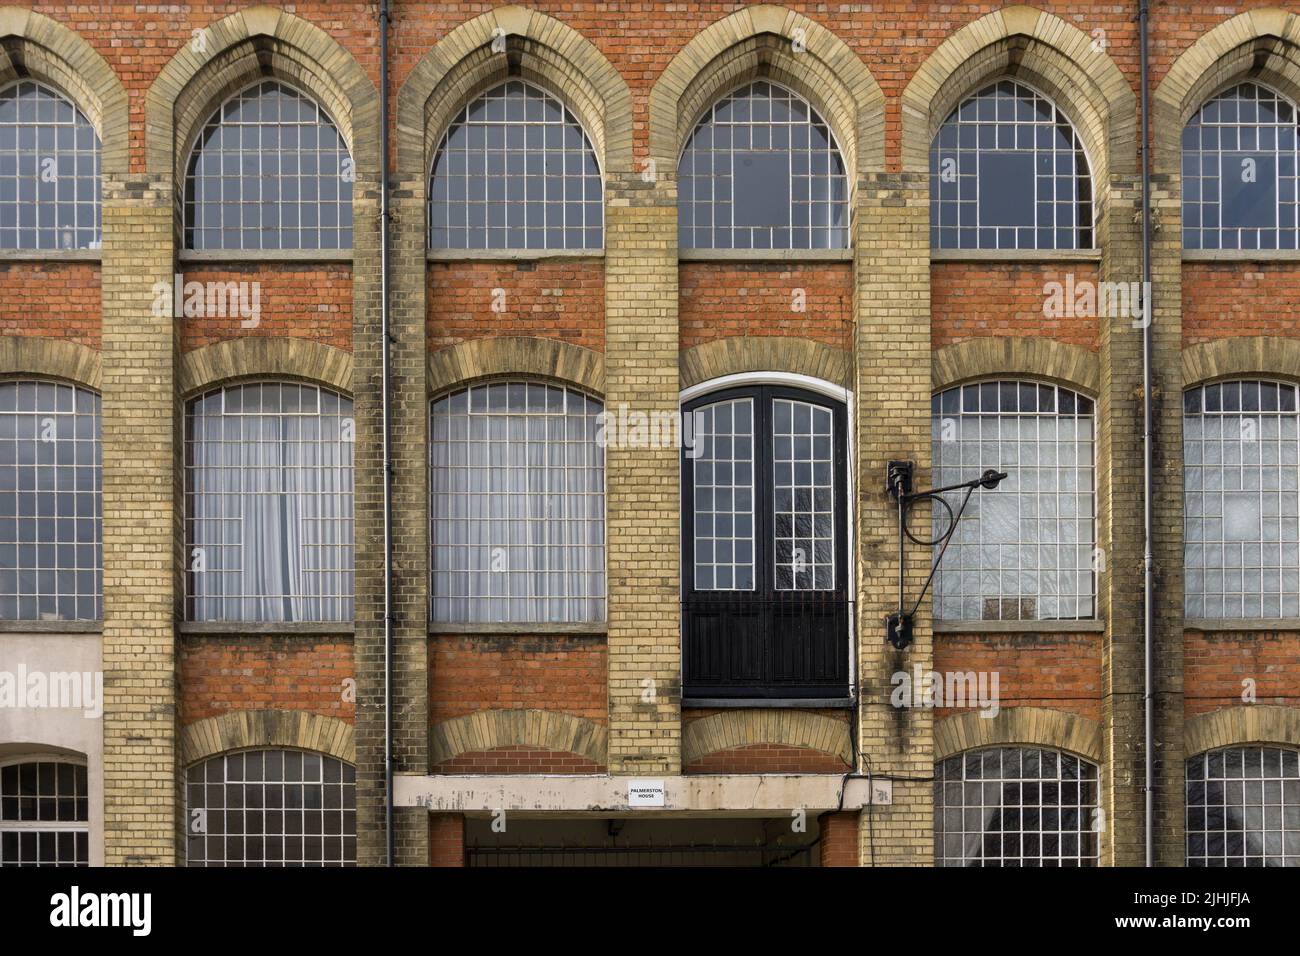 Fachada de Palmerston House, Northampton, Reino Unido, una antigua fábrica de zapatos convertida ahora en pisos y apartamentos. Concepto de reutilización, reutilización, Foto de stock